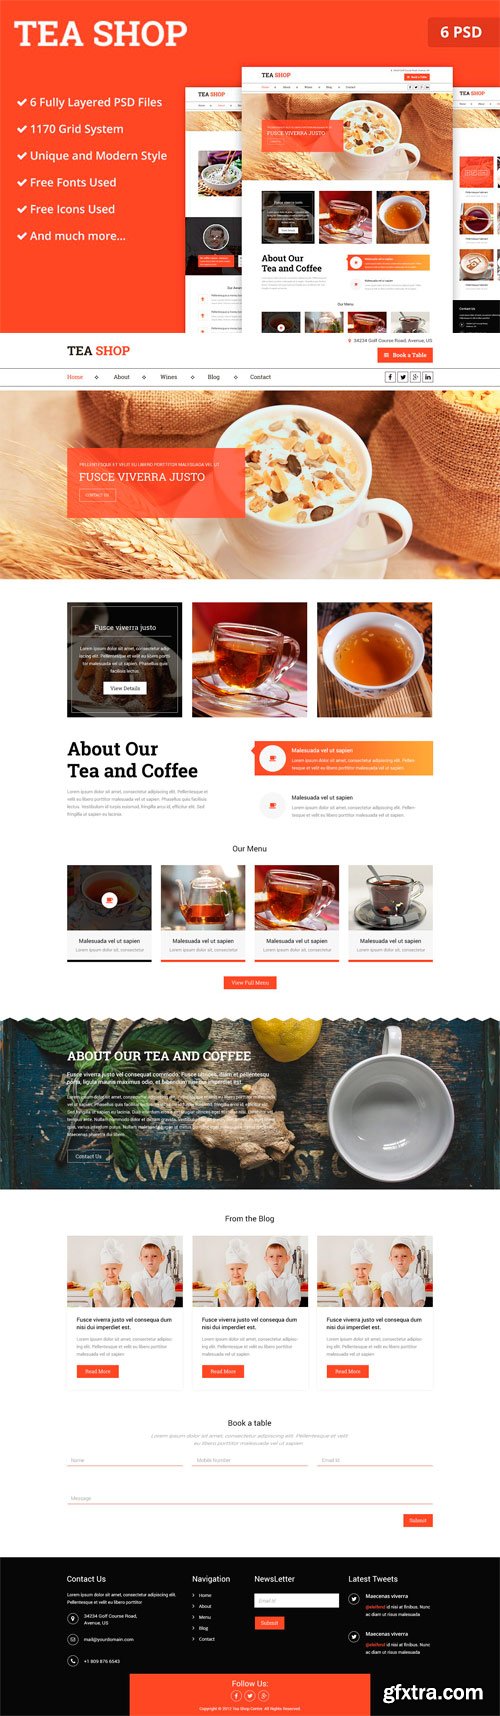 CM - Tea Store PSD Website Template 2172962